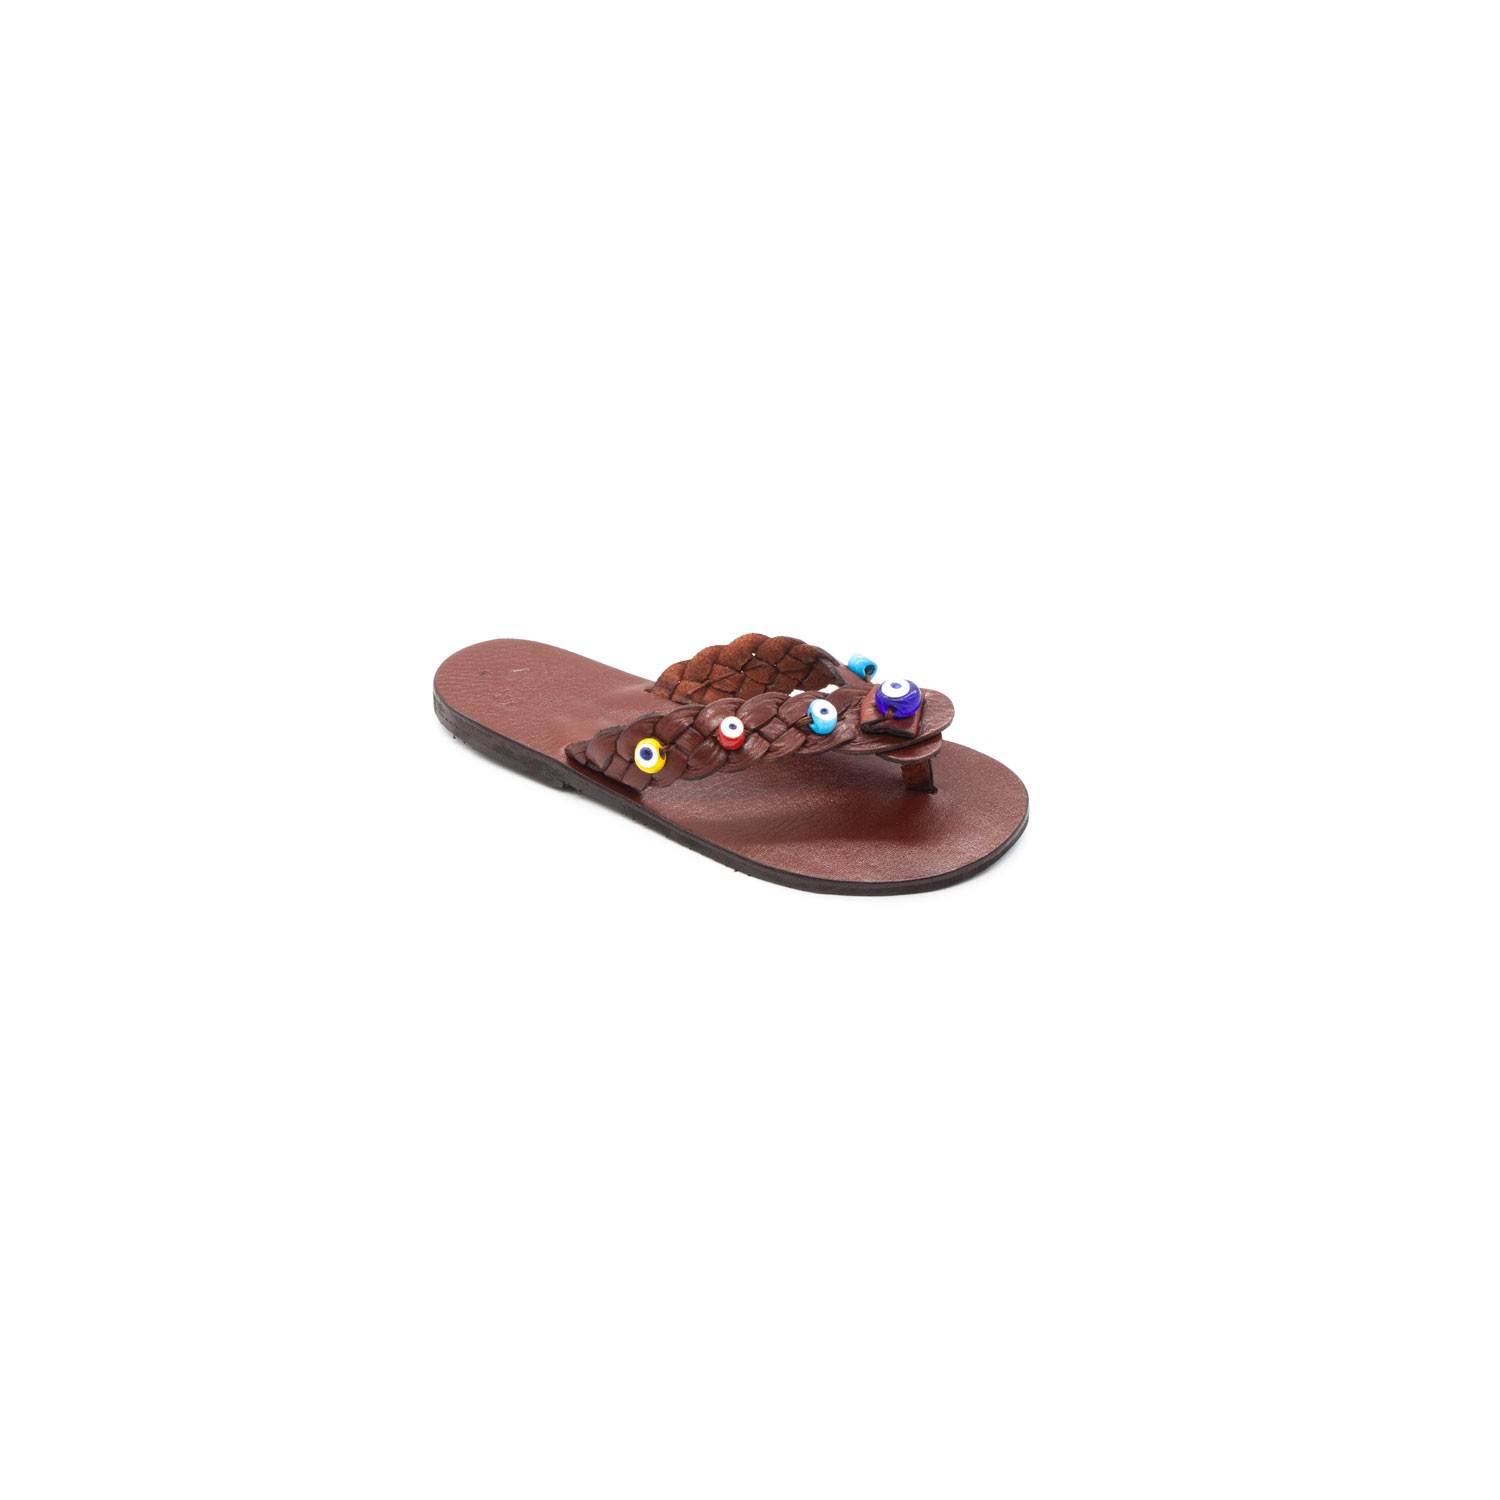 Sur Sandalet El Yapımı Deri Kız Çocuk Bodrum Parmak Arası Terlik - Kahverengi